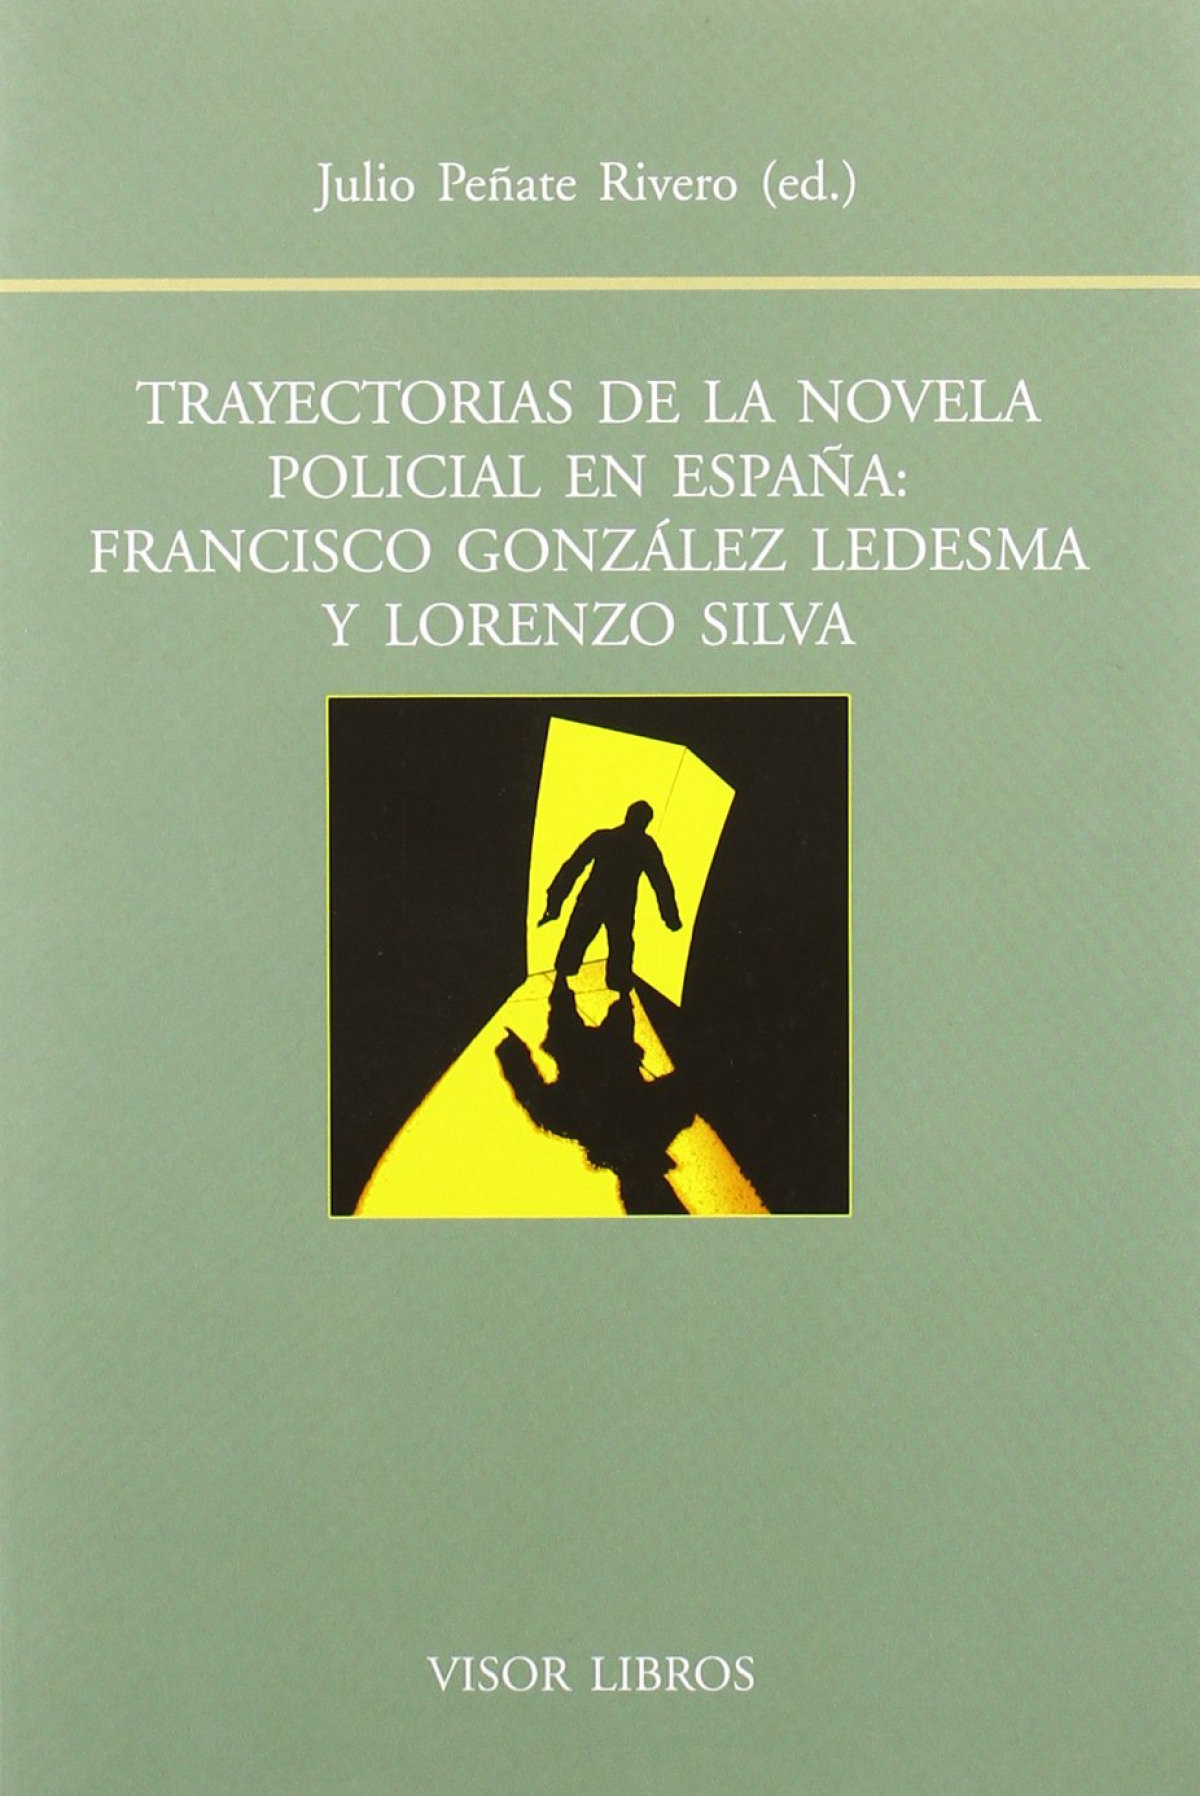 Trayectorias de la novela policial en espaÑa bf-116 francisc - PeÑate Rivero, Julio (ed)